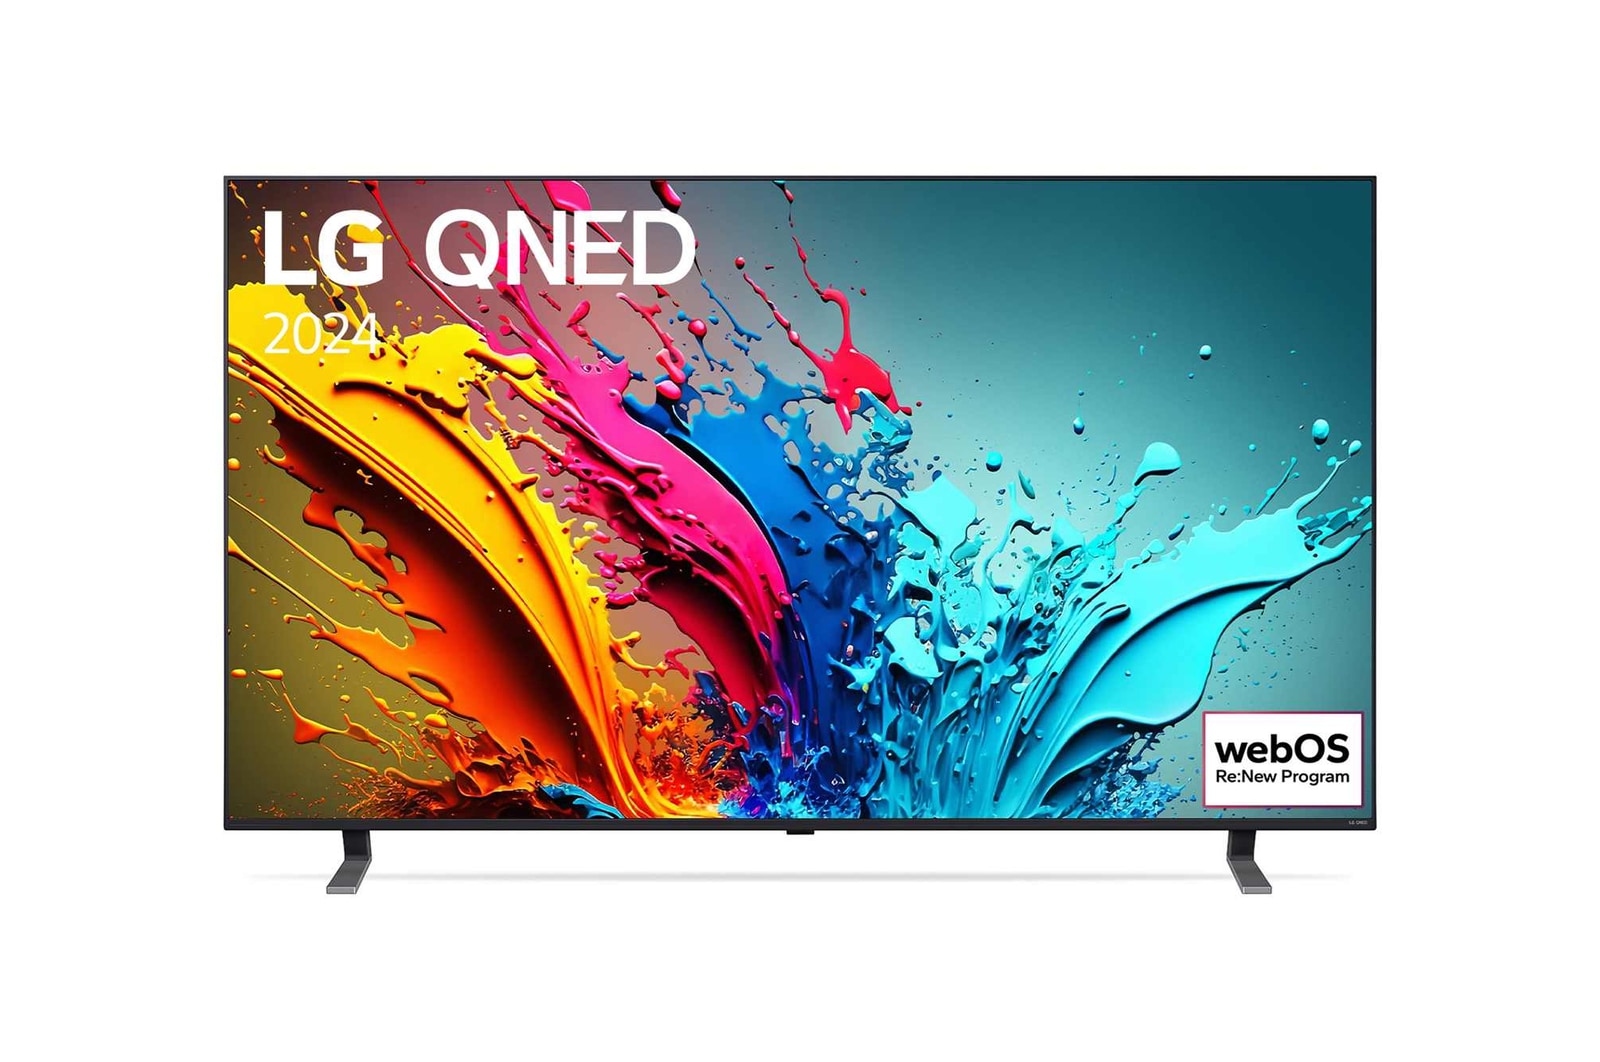 Vue de face de la TV LG QNED, QNED85 avec le texte LG QNED, 2024 et le logo webOS Re:New Program à l’écran.